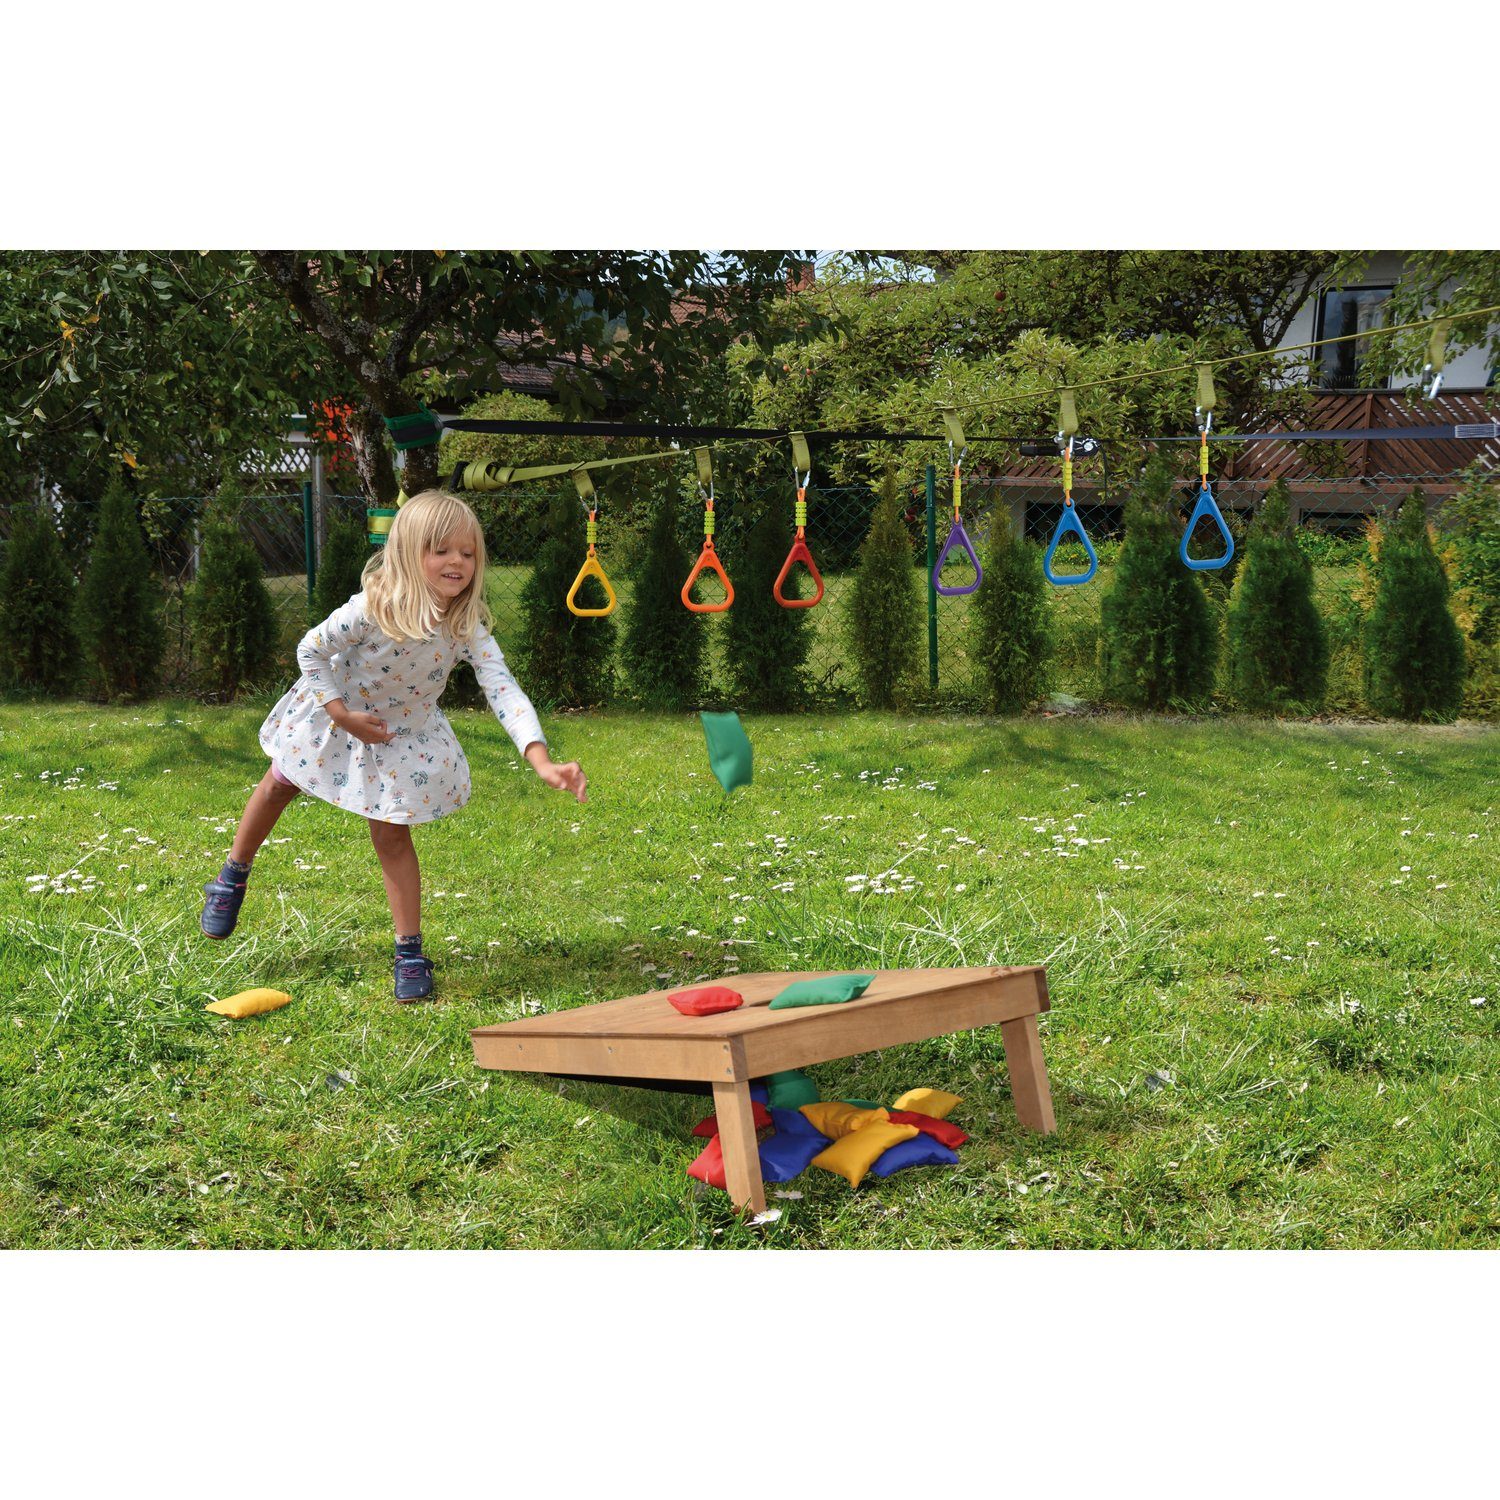 Zielwurfspiel Bohnensäckchen Spielzeug-Gartenset EDUPLAY